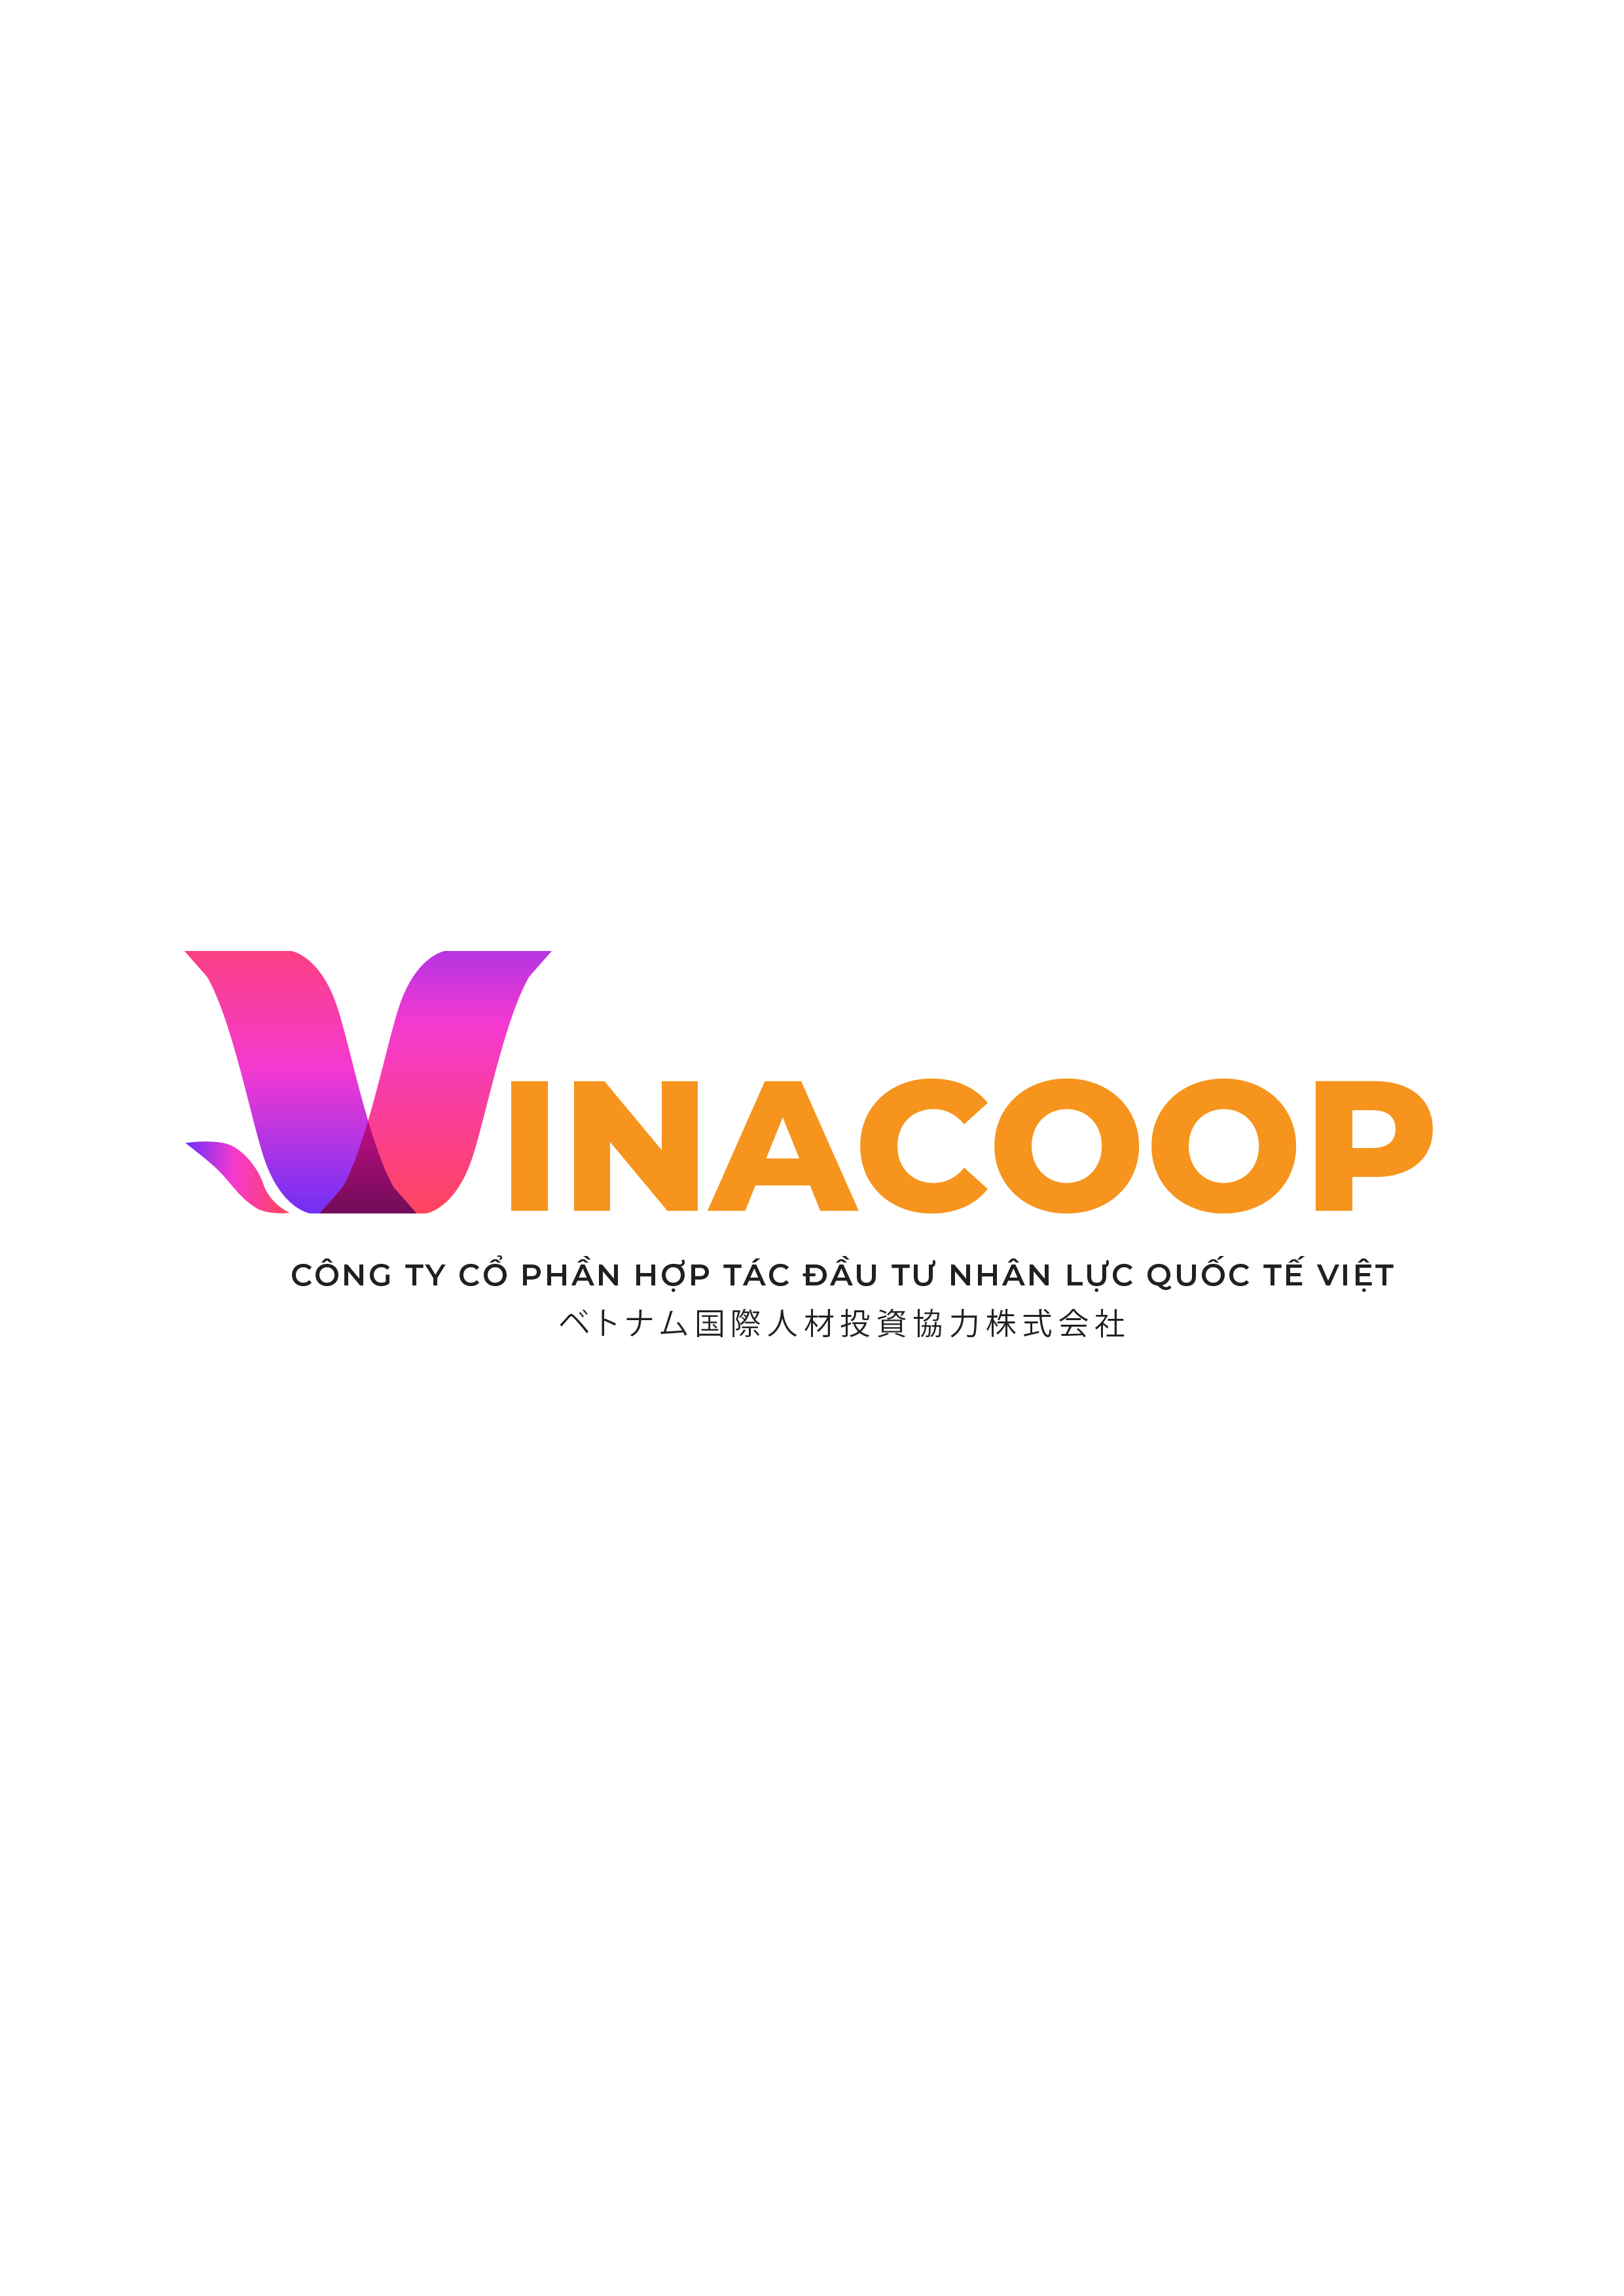 Vinacoop., JSC